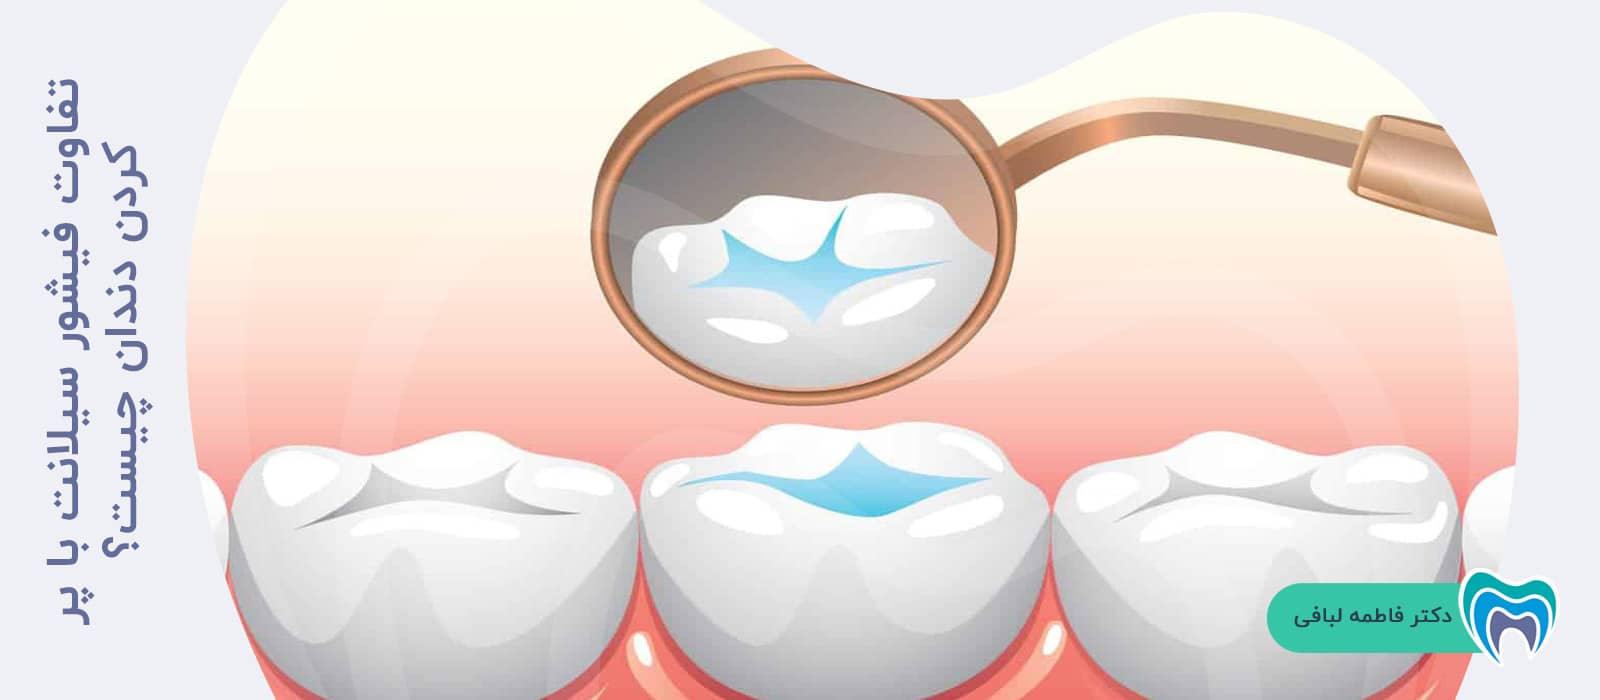 تفاوت فیشور سیلانت با پر کردن دندان چیست؟